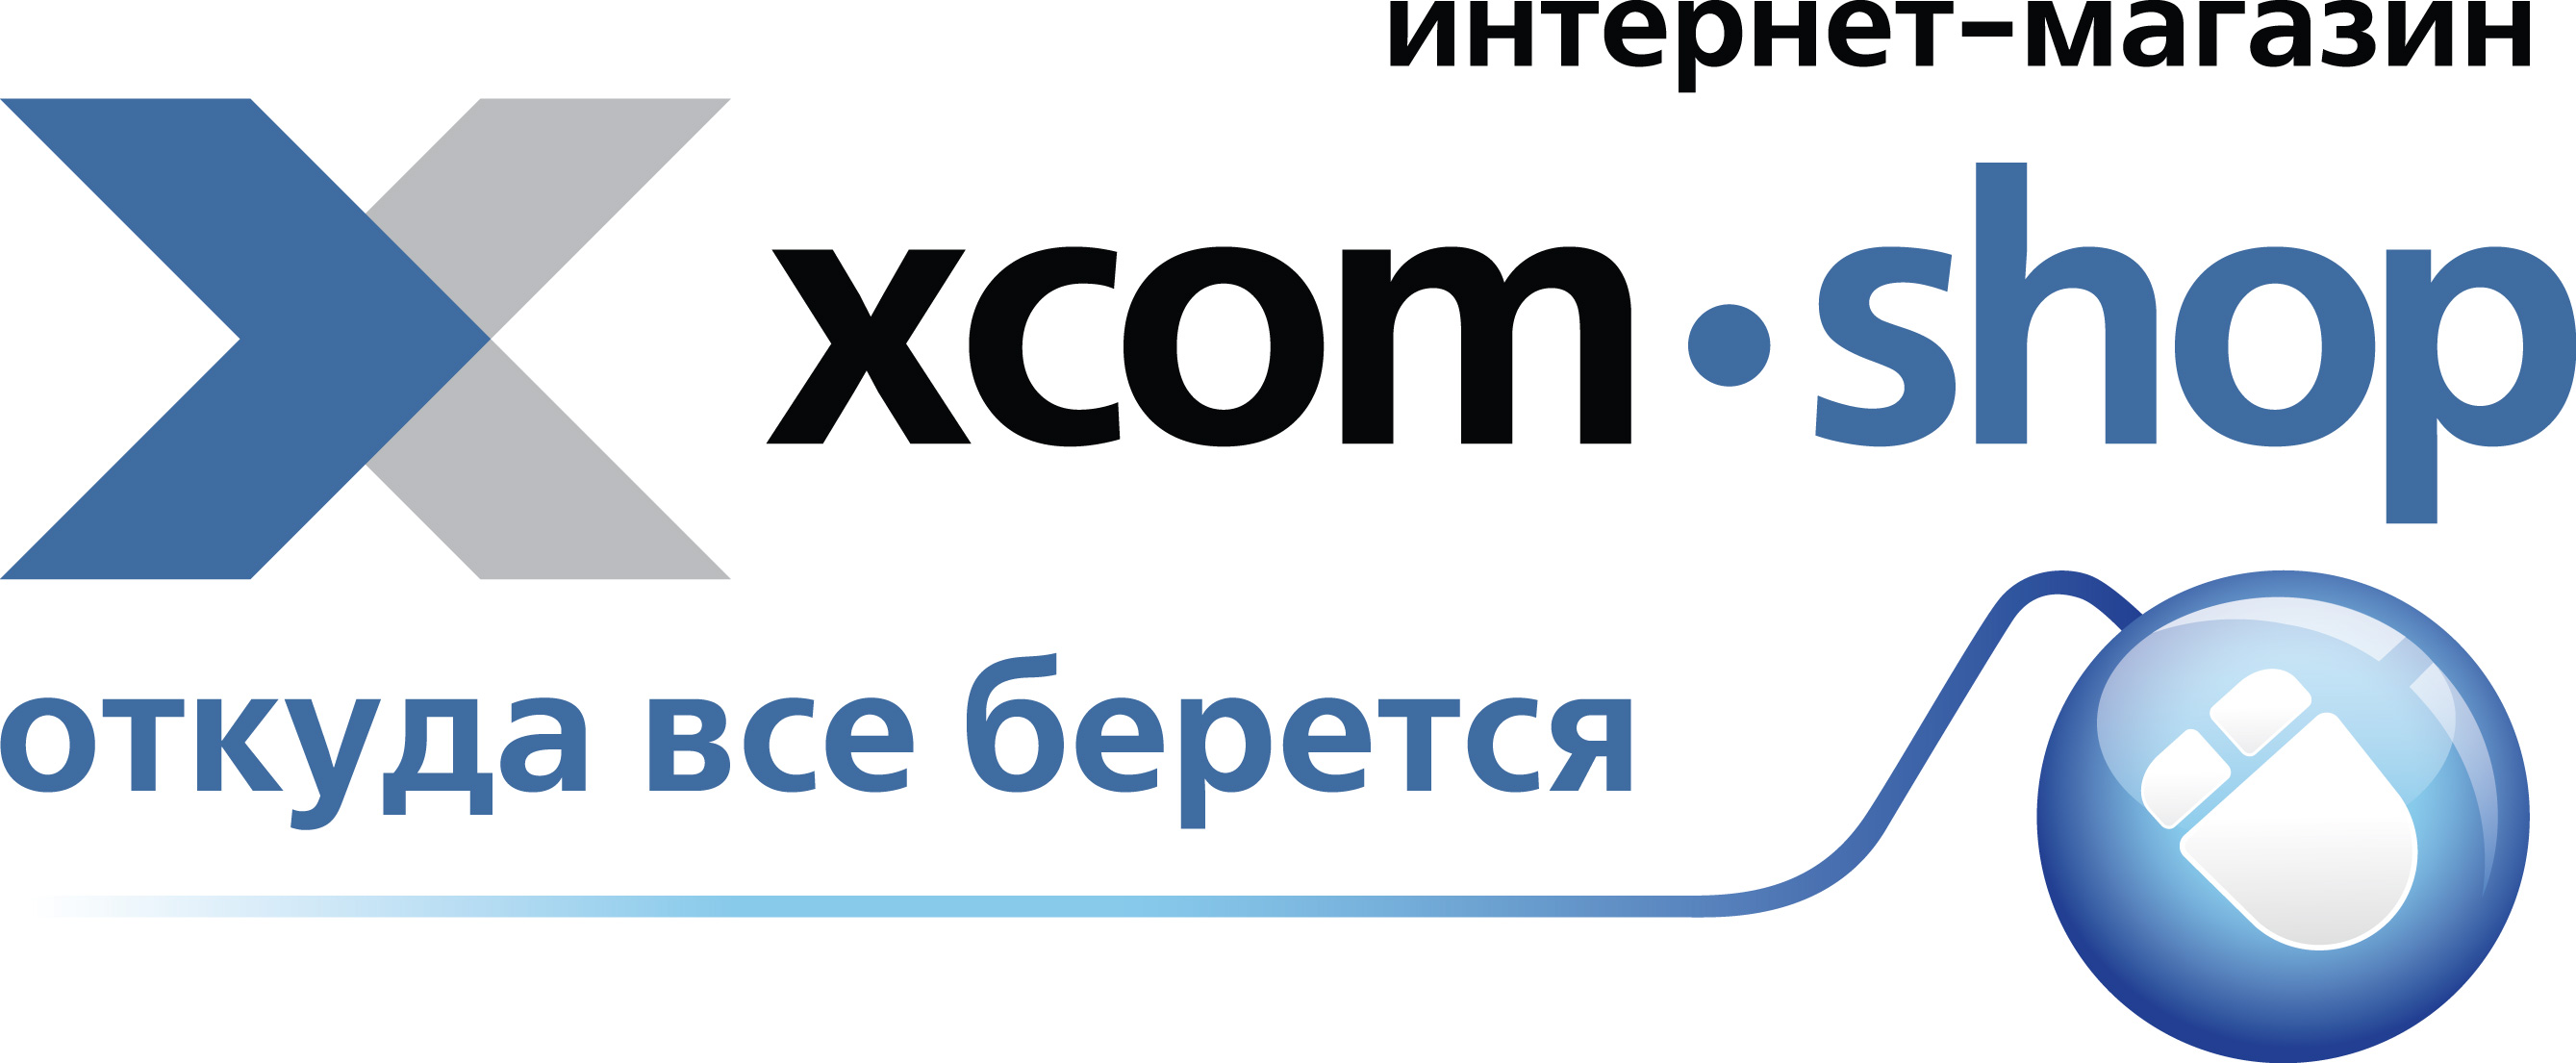 Твой интернет спб. Интернет магазин. XCOM shop. XCOM-shop.ru интернет магазин. Логотип интернет магазина.